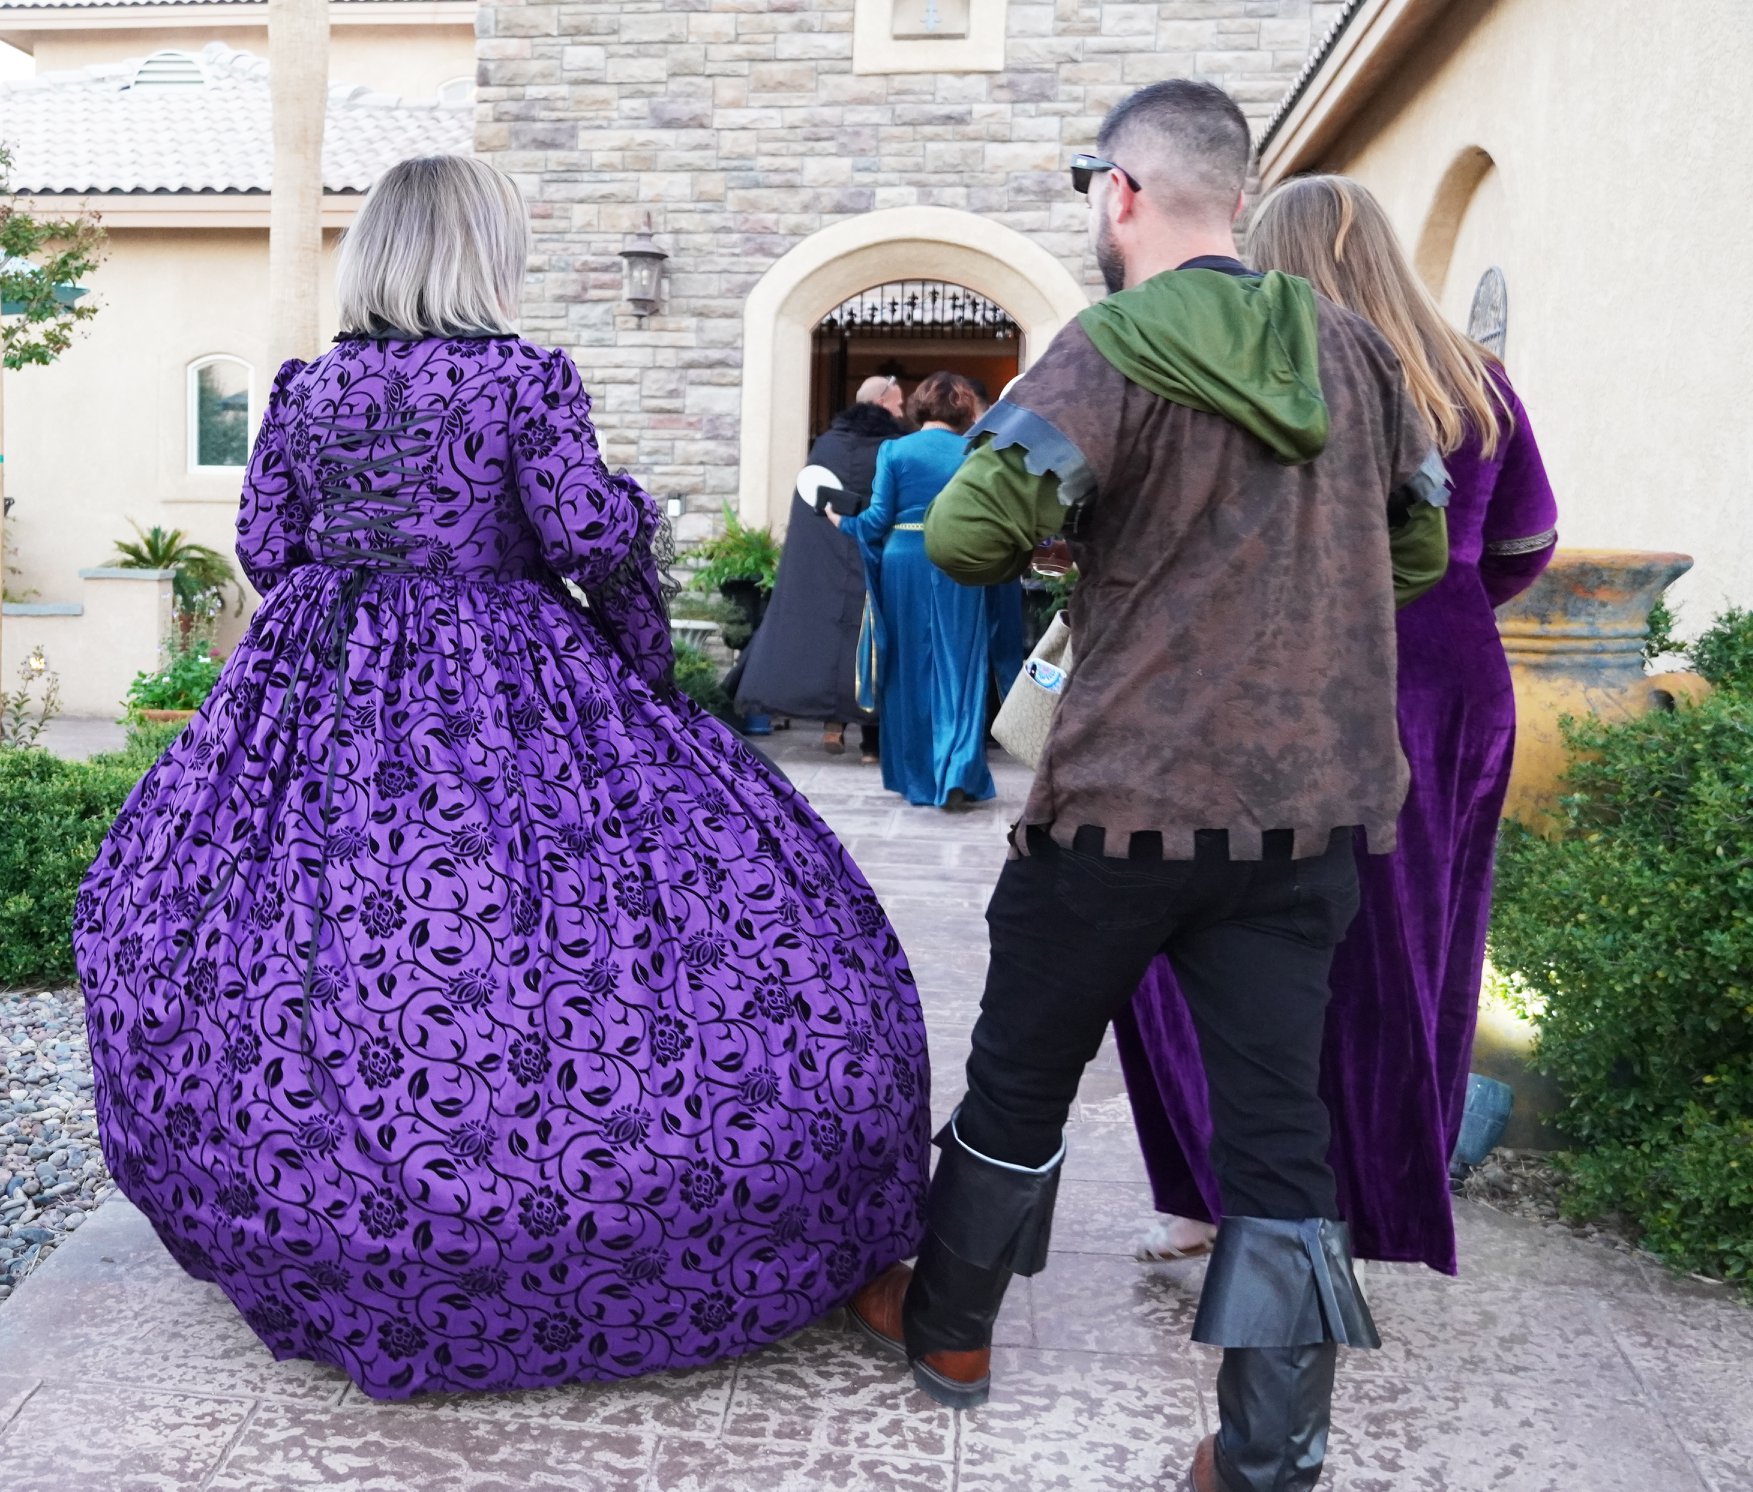 Woman in purple dress